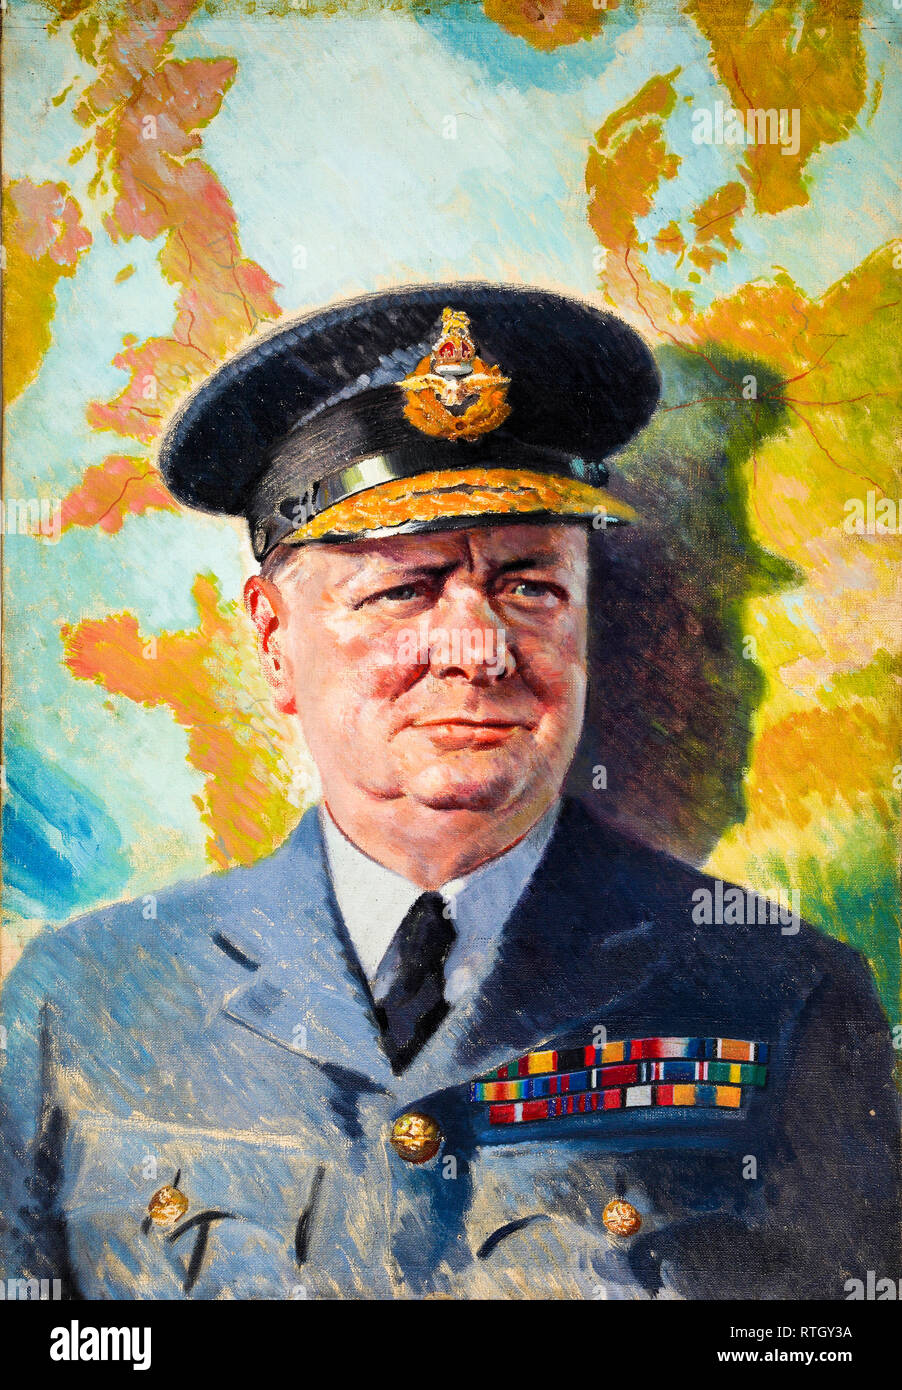 Winston Churchill in uniforme di RAF, ritratto dipinto, c. 1940 Foto Stock